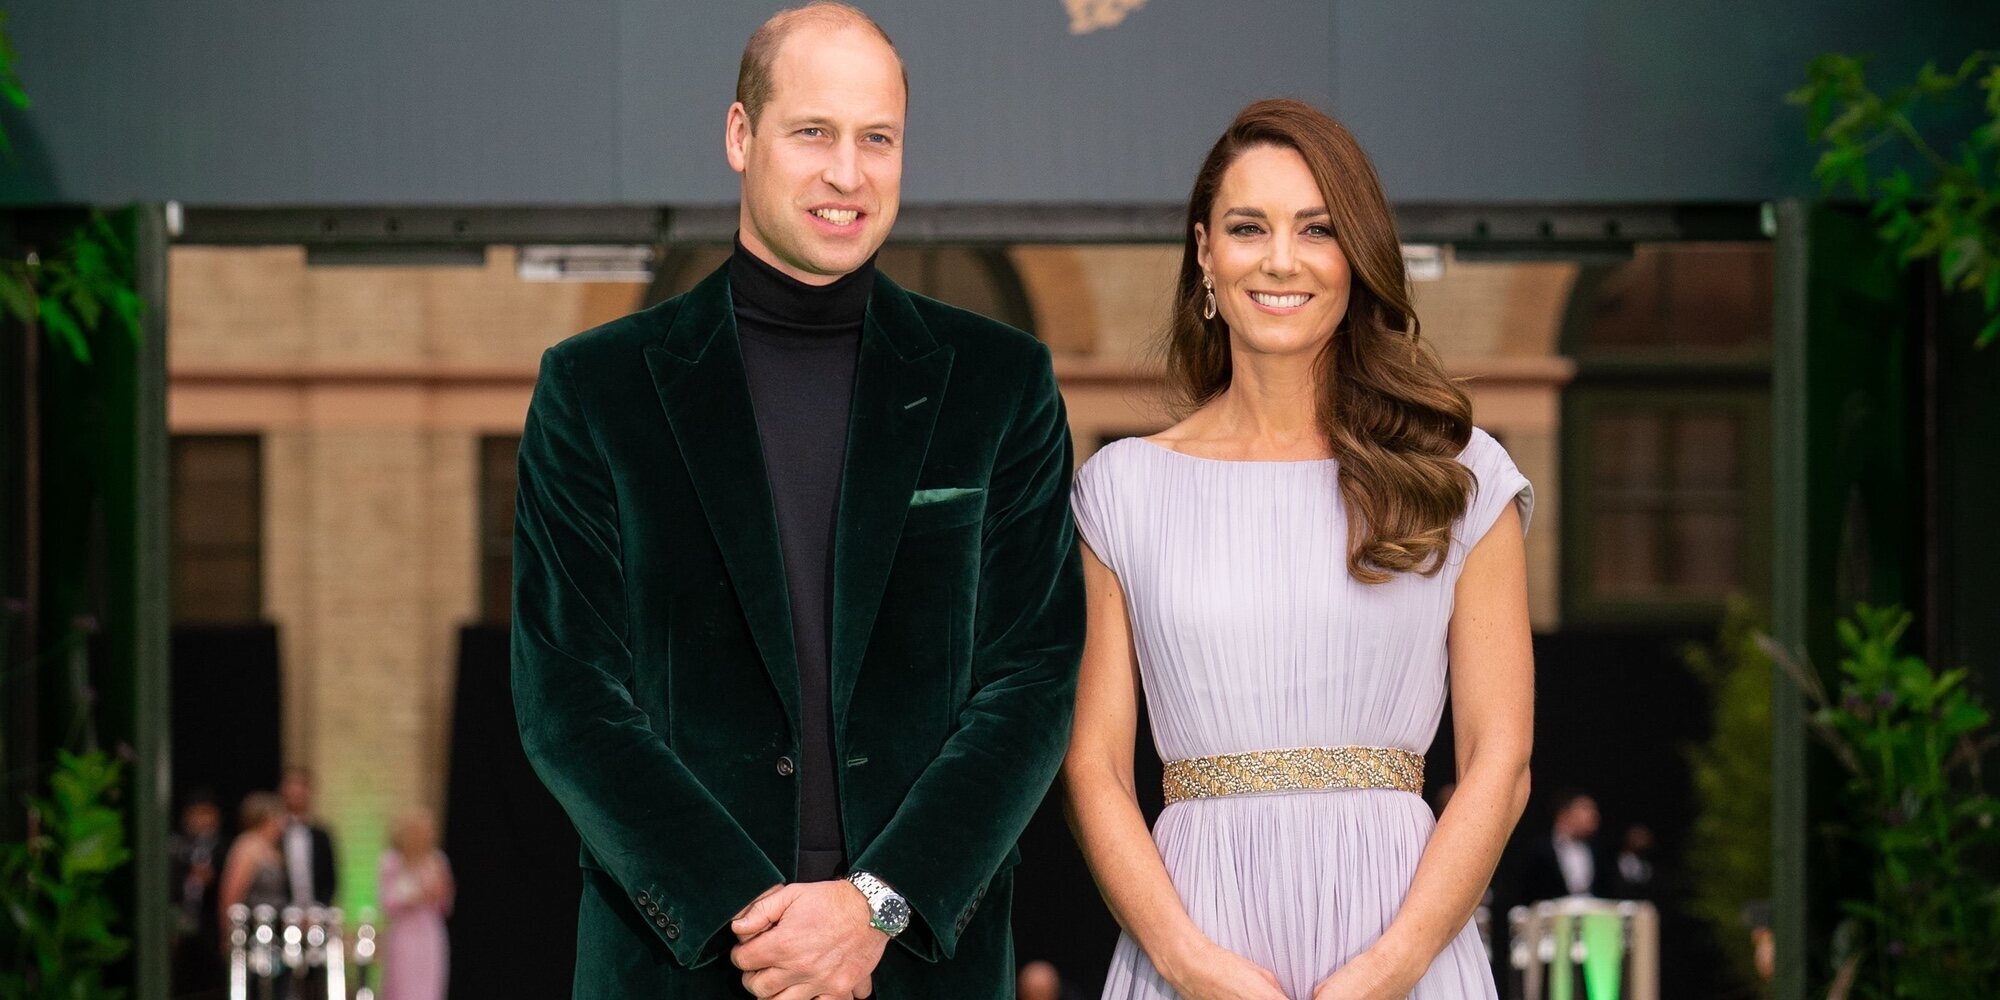 El camino elegido por el Príncipe Guillermo y Kate Middleton rumbo al trono: un plan preparado y una prioridad